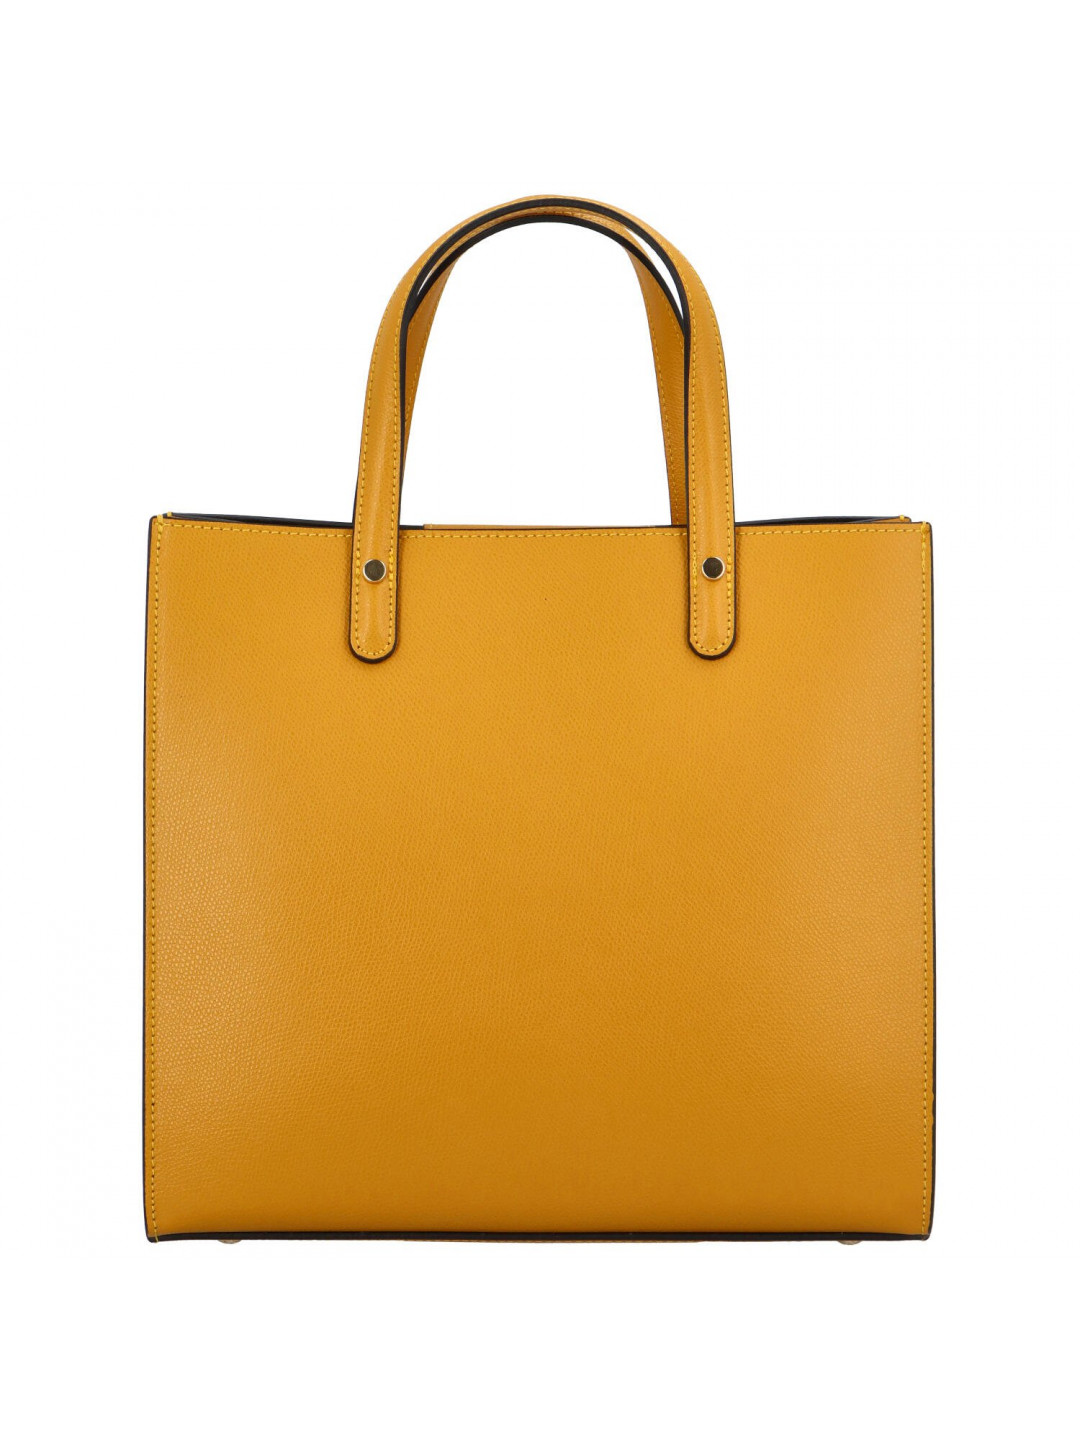 Luxusní dámská kožená kabelka do ruky Amada žlutá